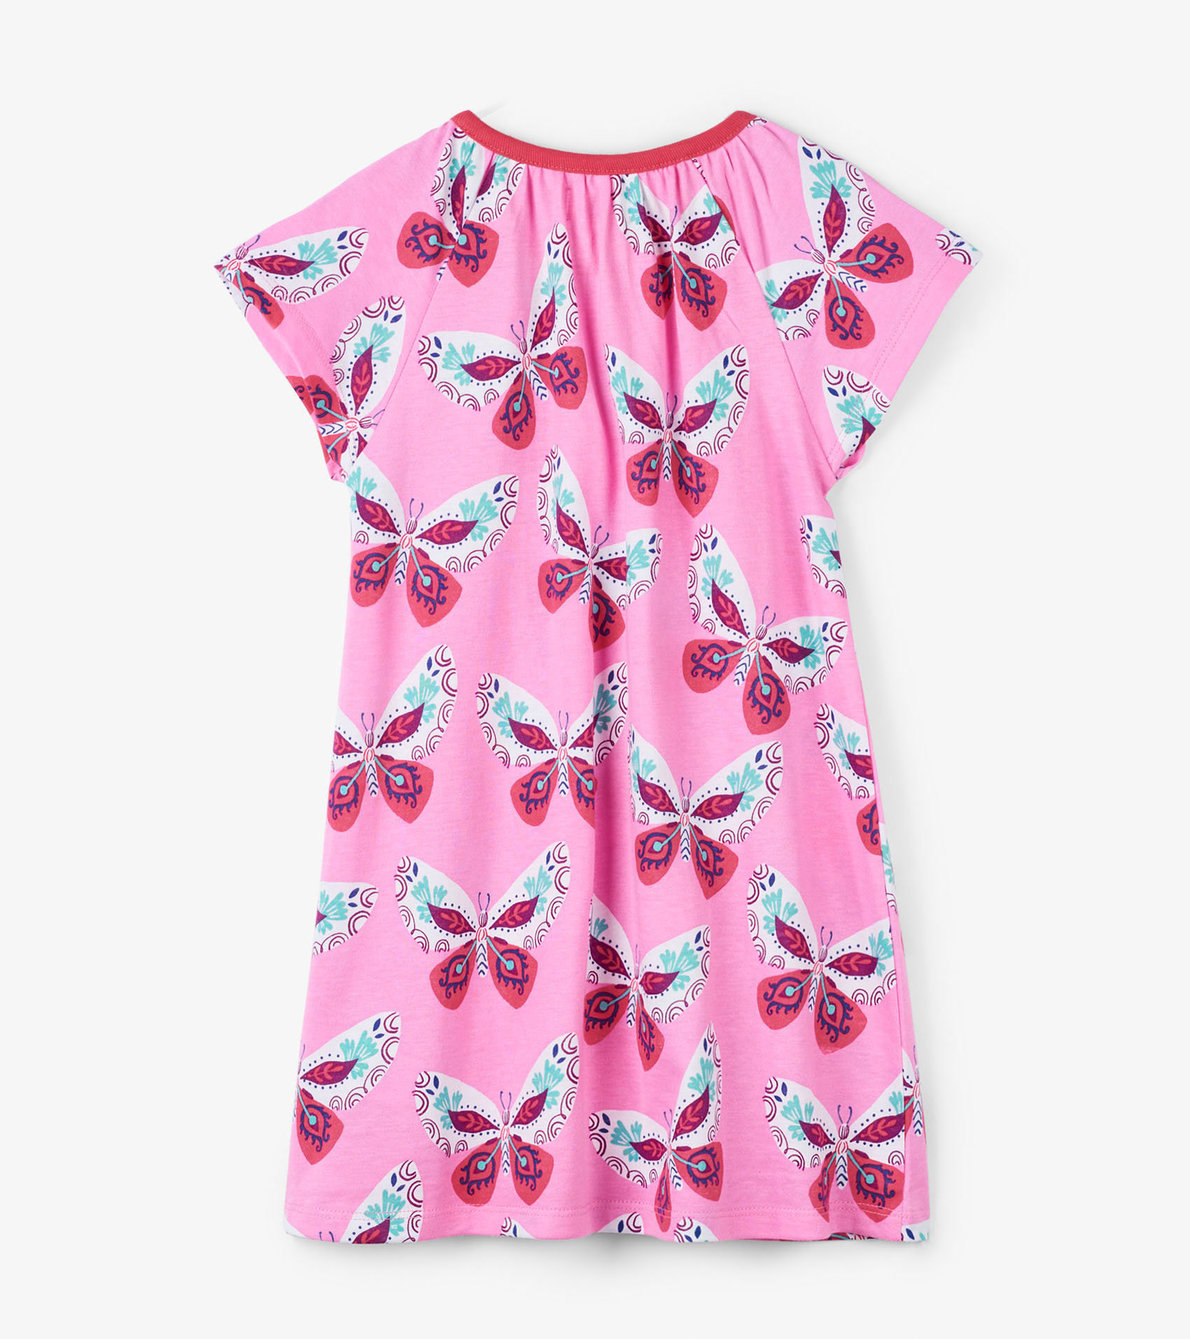 View larger image of Decorative Butterflies Tee Shirt Dress